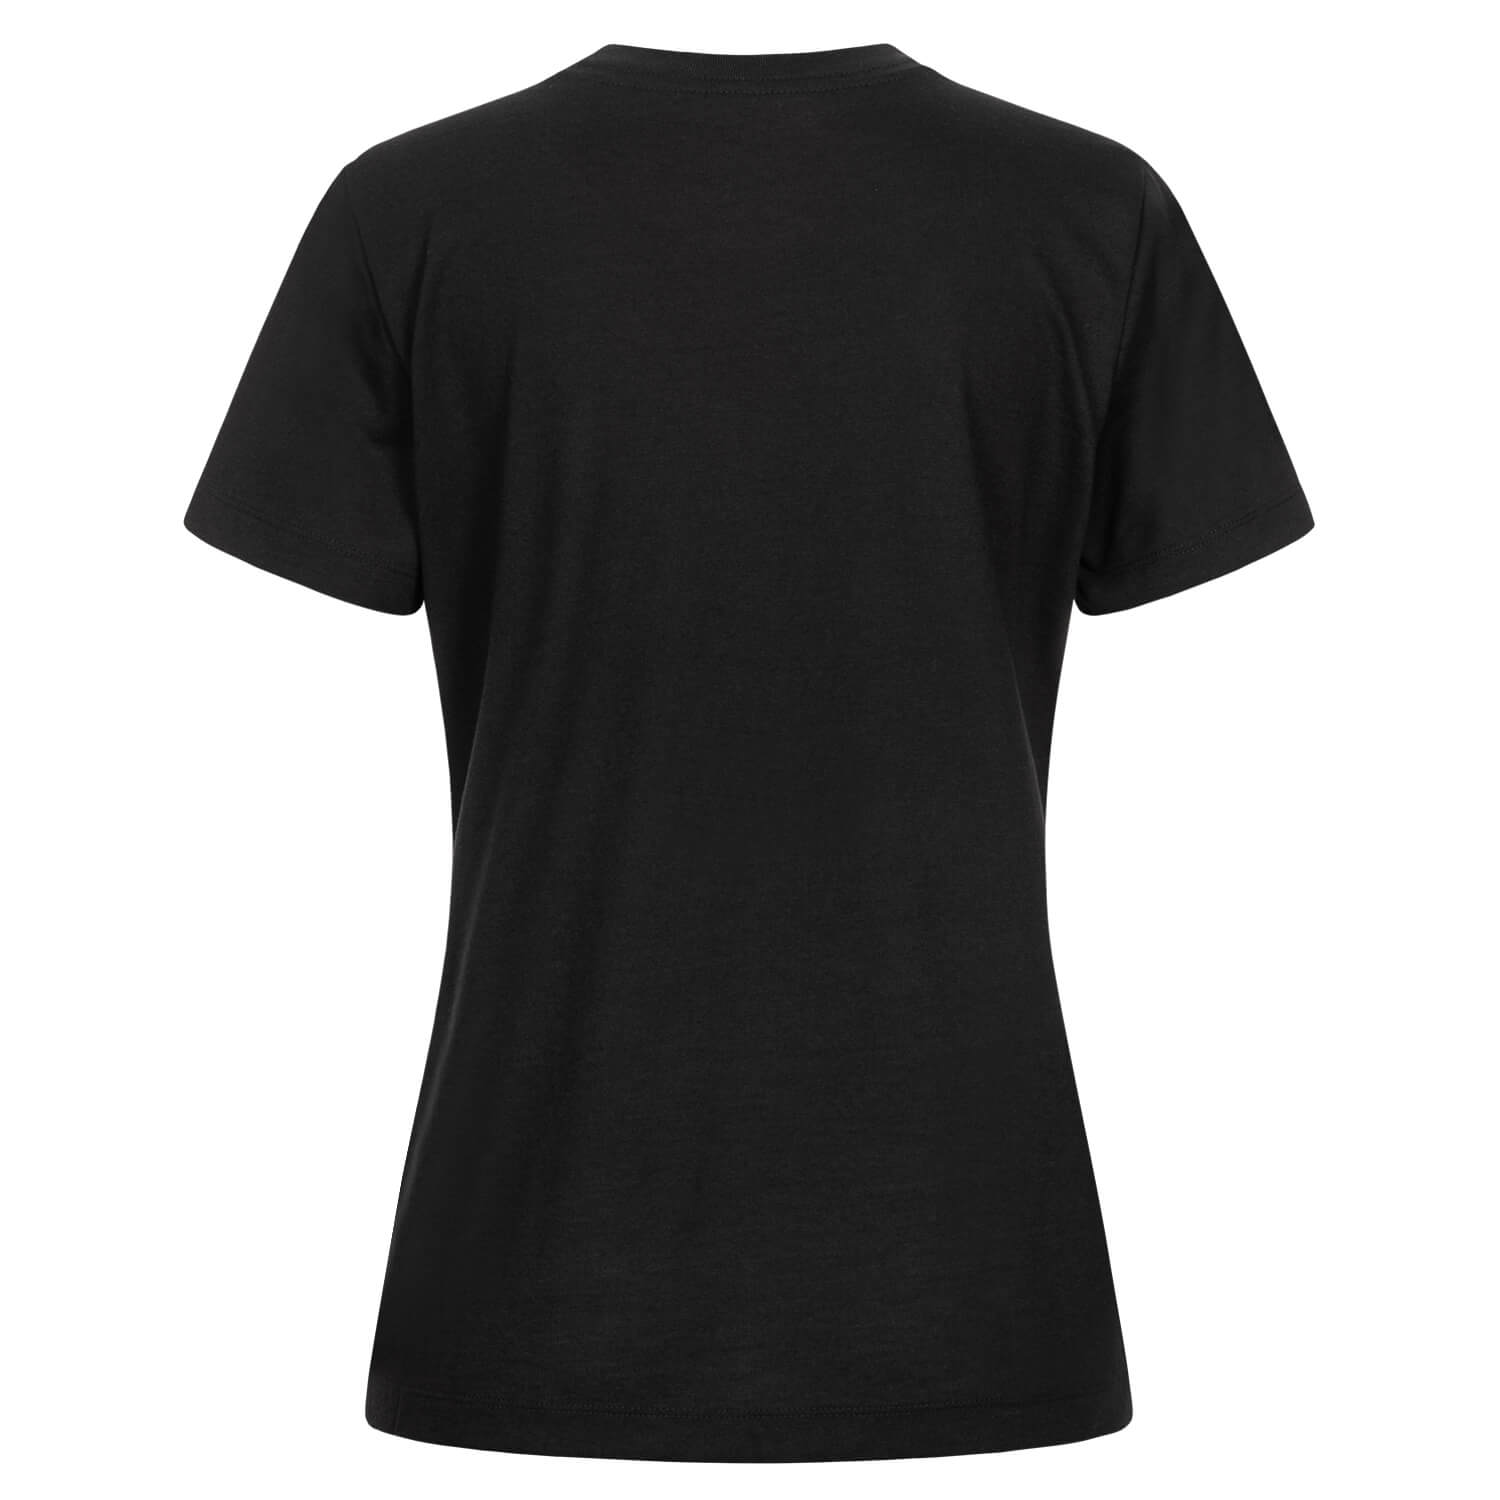 Bild 2: Nike Damen T-Shirt Swoosh Schwarz 24